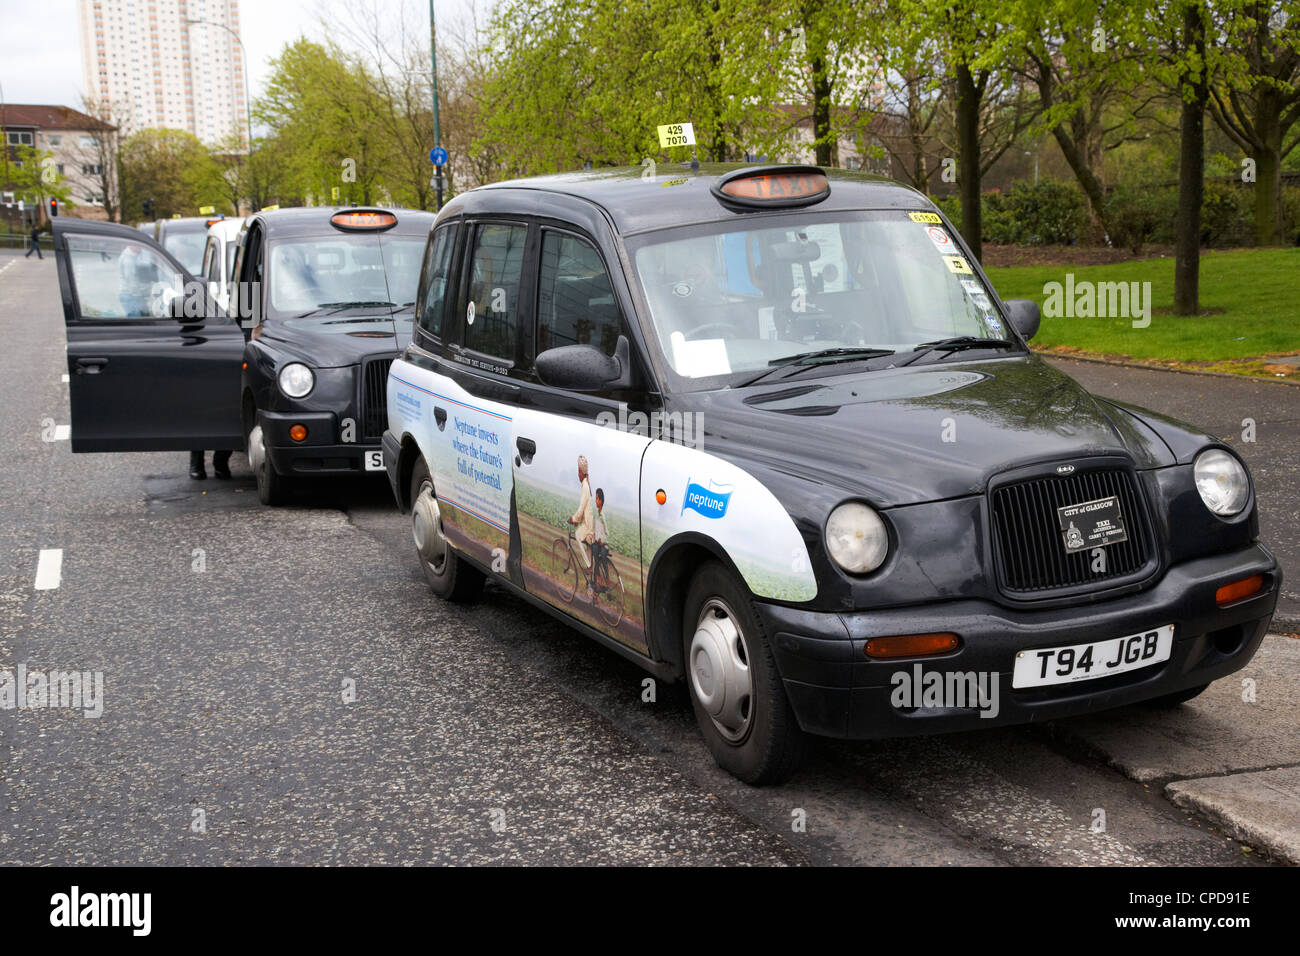 Nero città di Glasgow i taxi in fila su una strada in Glasgow Scotland Regno Unito Foto Stock